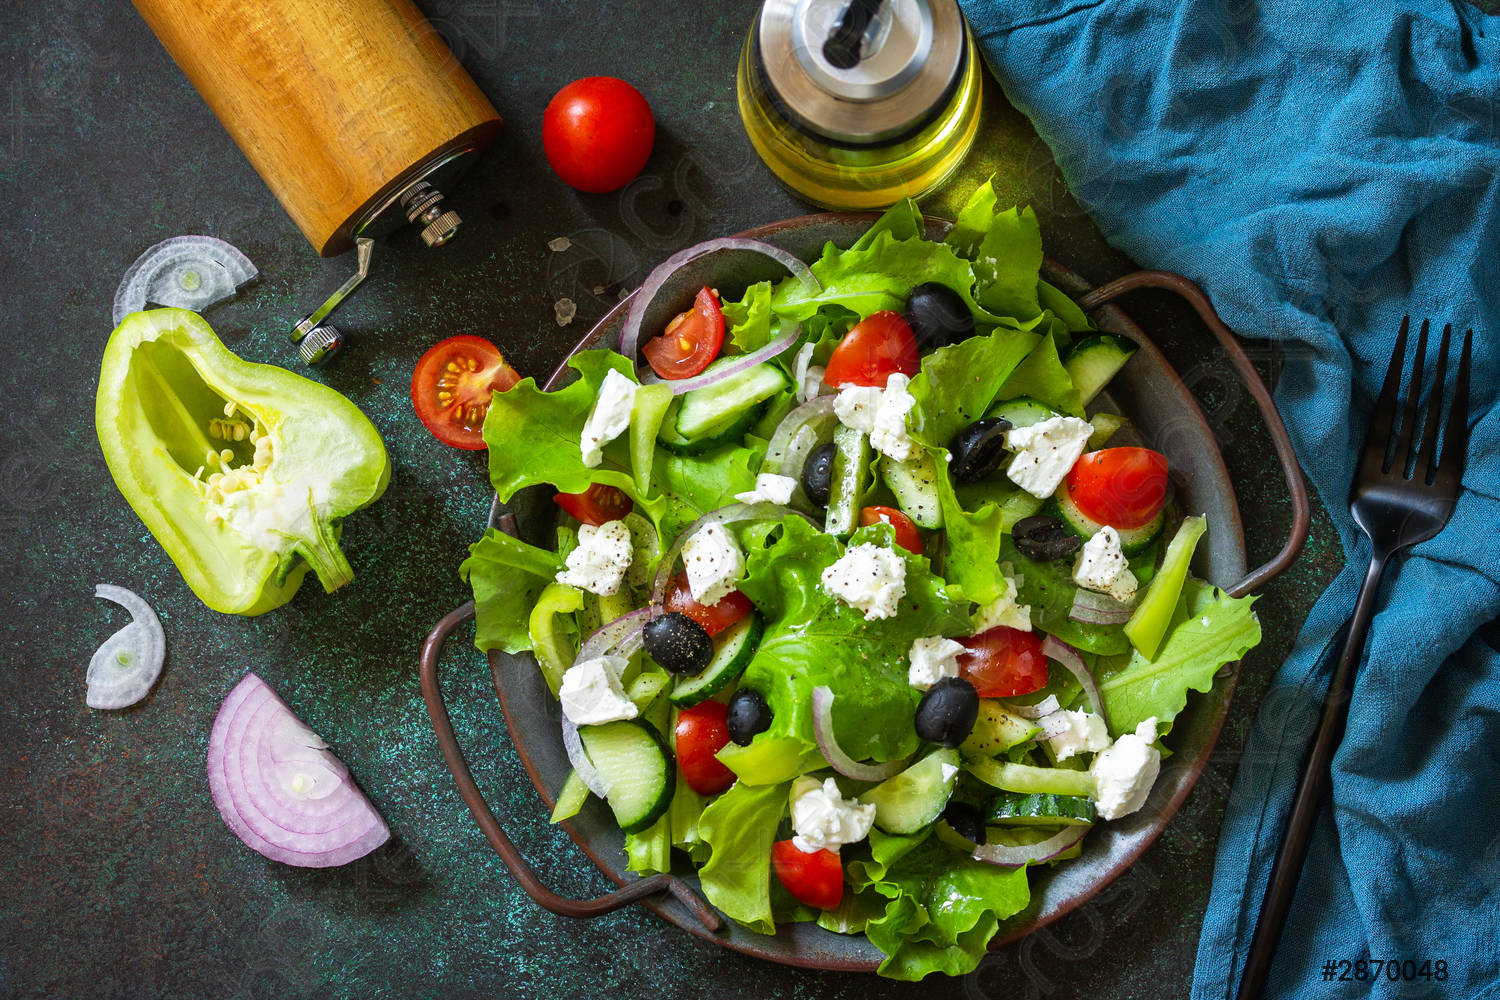 cach lam salad tron giam can don gian 7 - 10 cách làm salad trộn giảm cân đơn giản, giảm 3–4kg/tuần